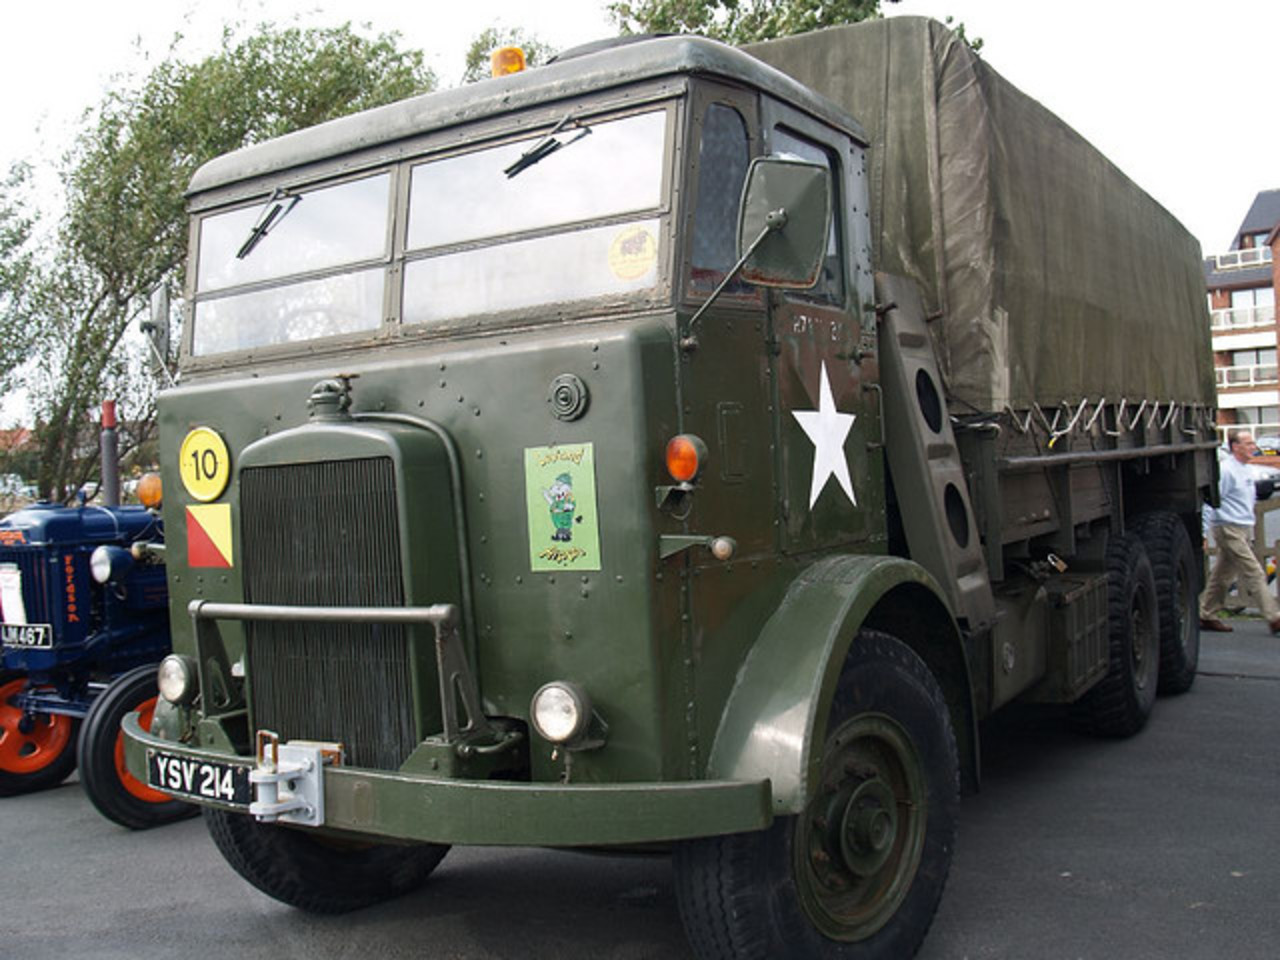 Leyland Hippo Army Trucks - 1945 | Flickr - Photo Sharing!